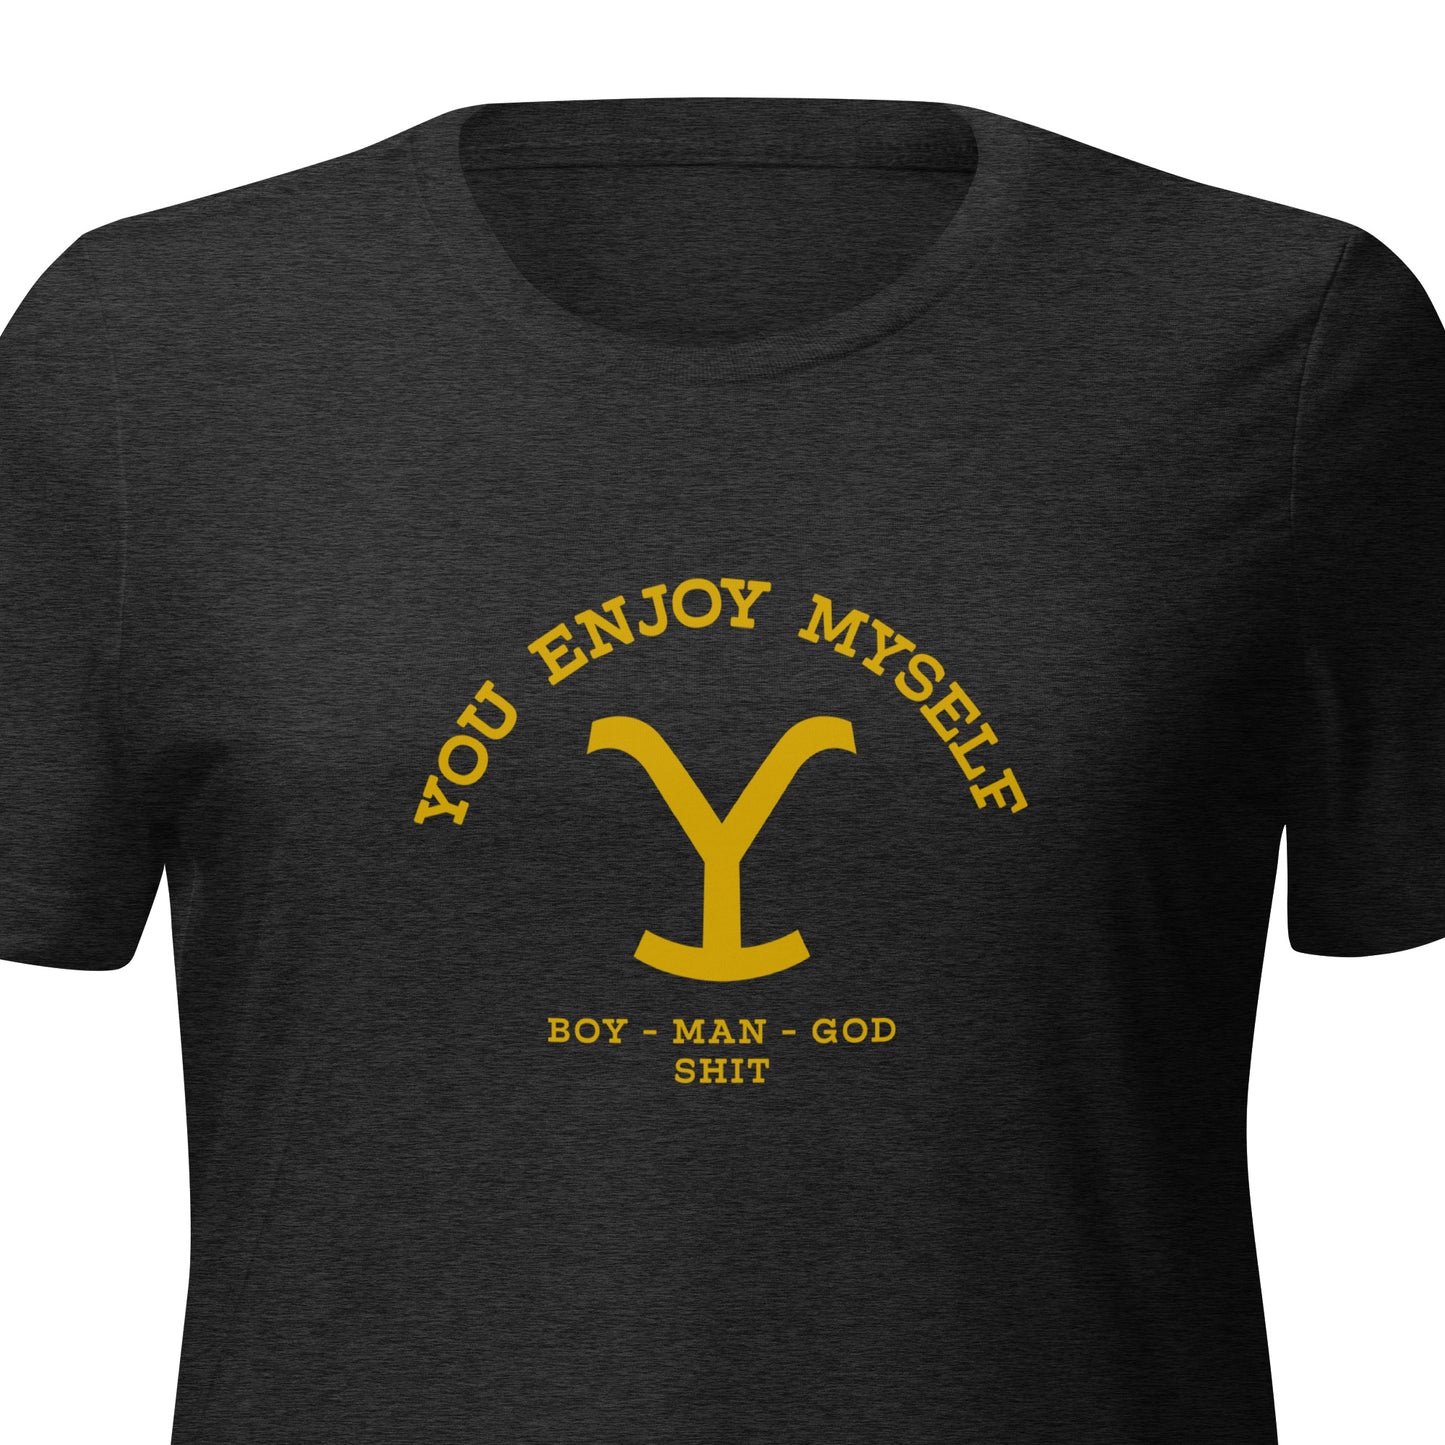 YEM - Yellowstone Women’s tri-blend t-shirt